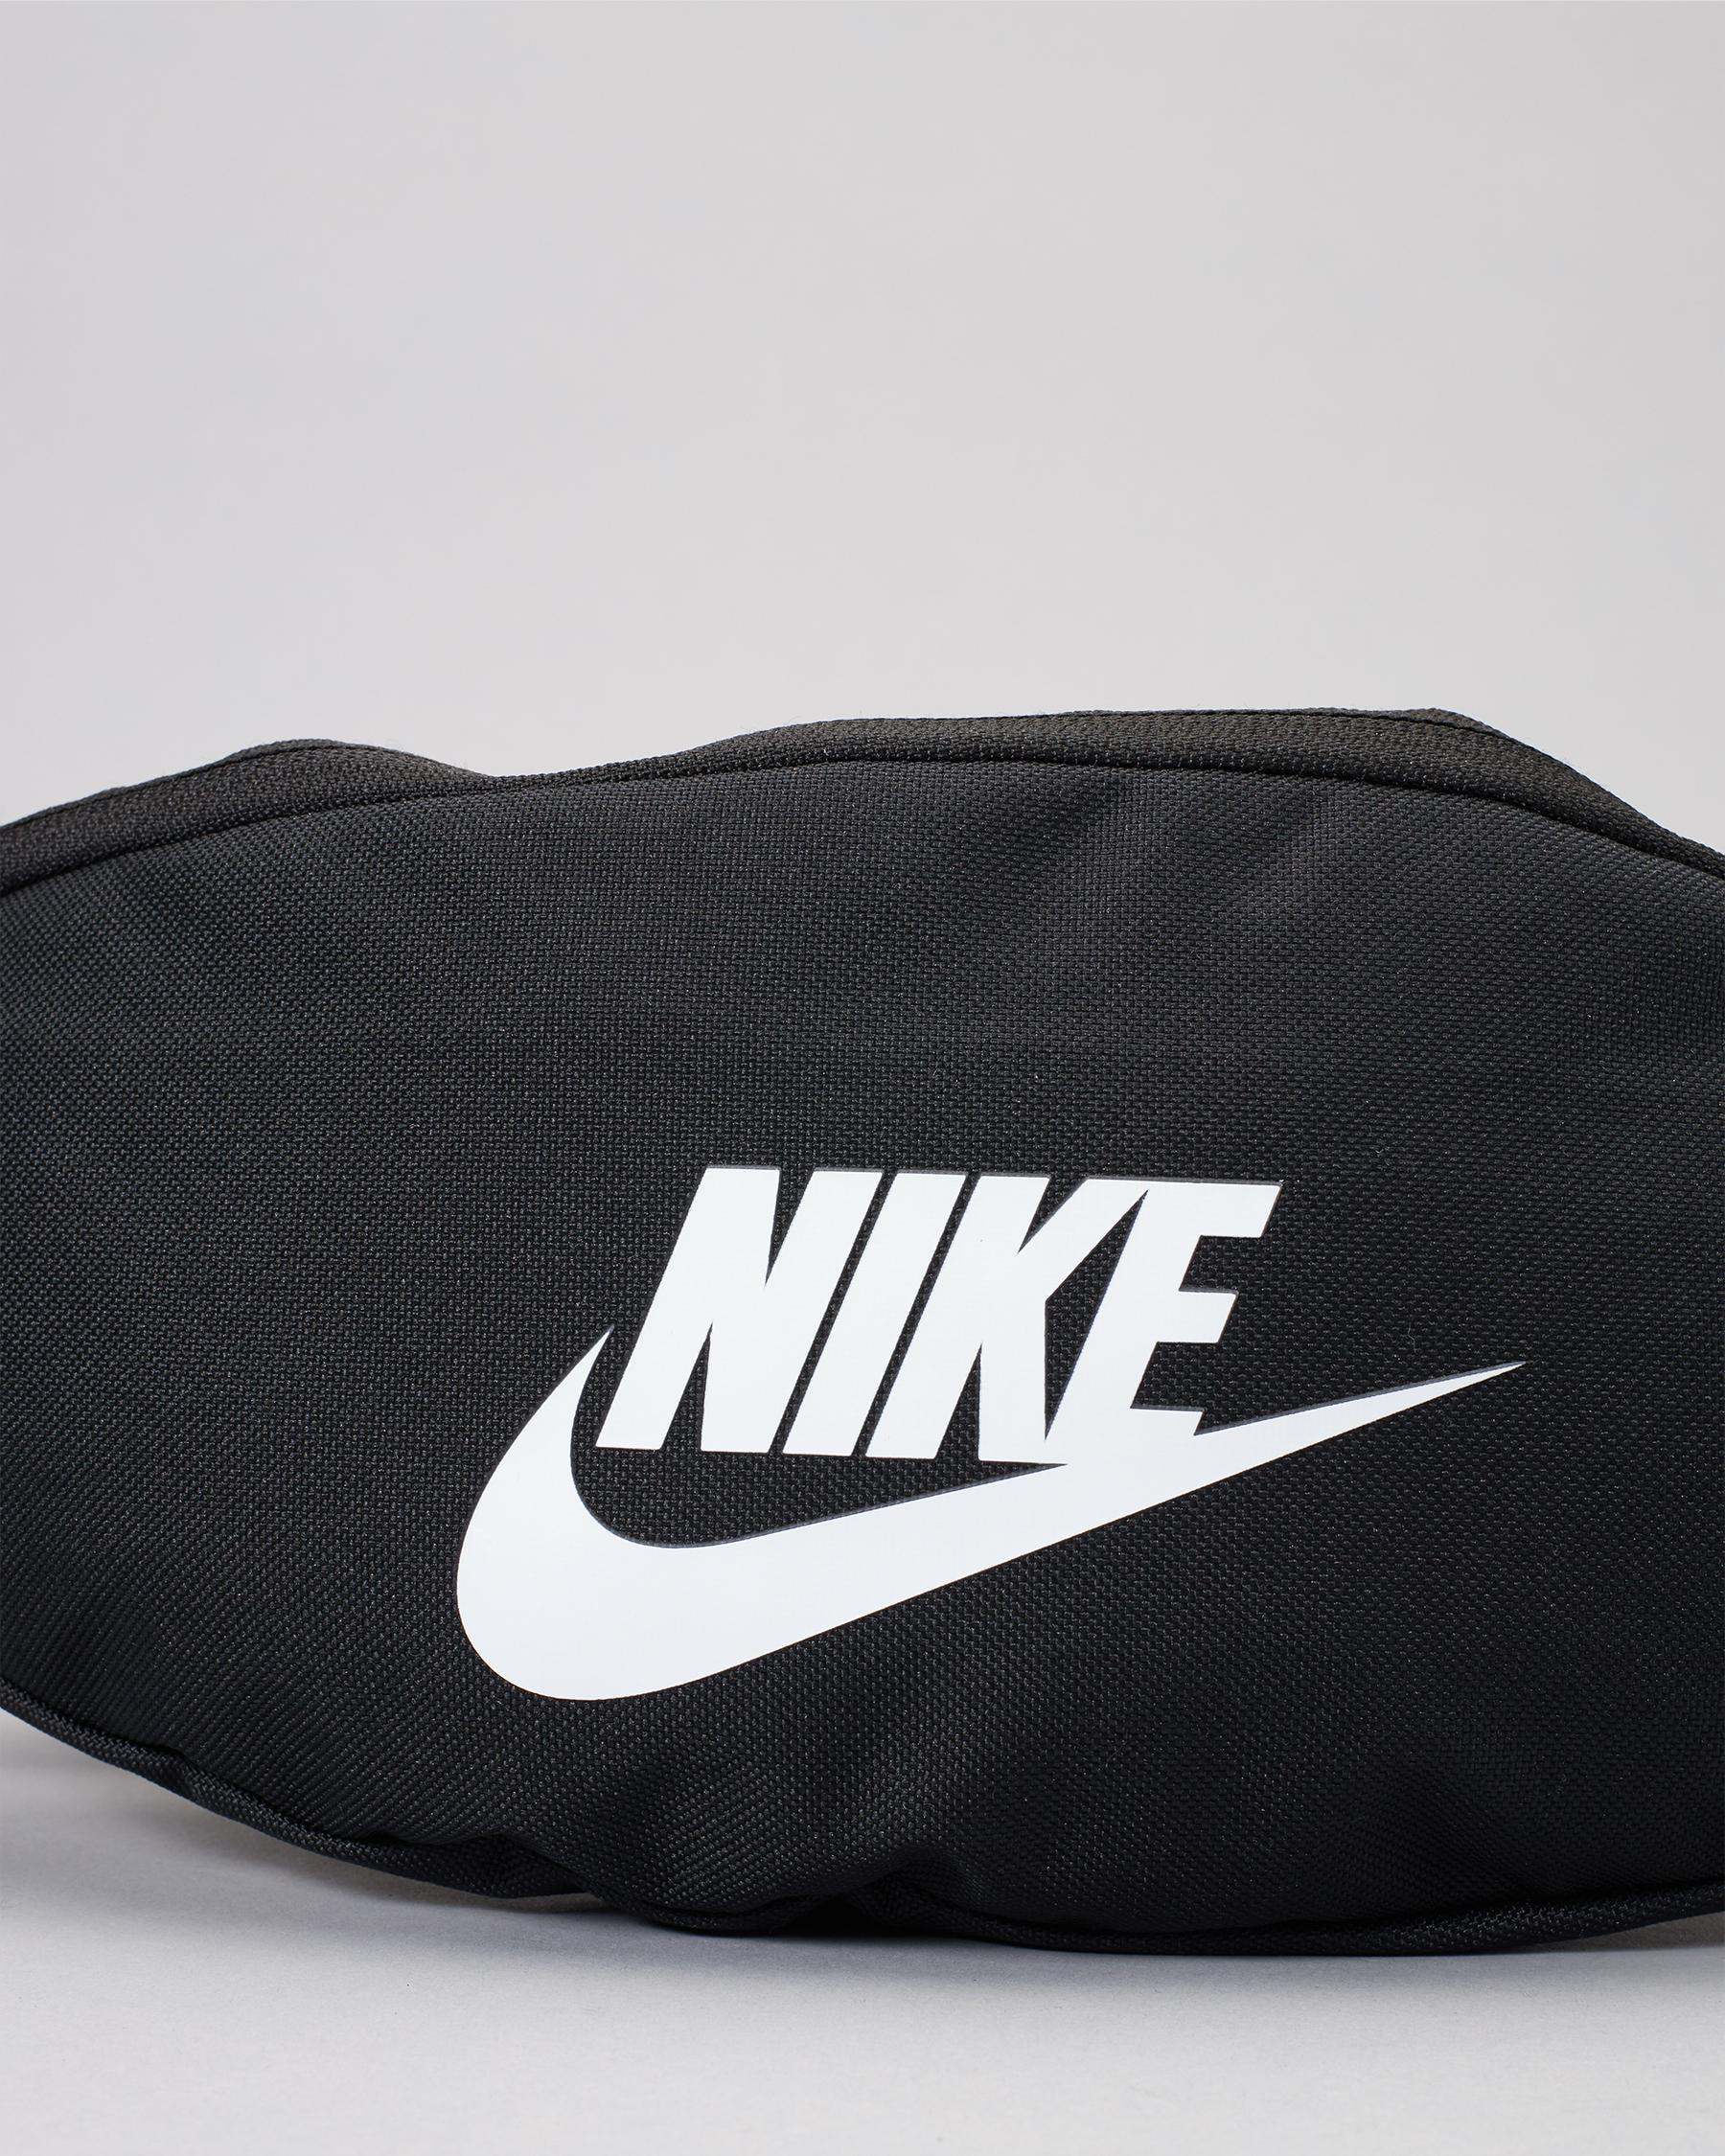 Nike Heritage bum bag in black